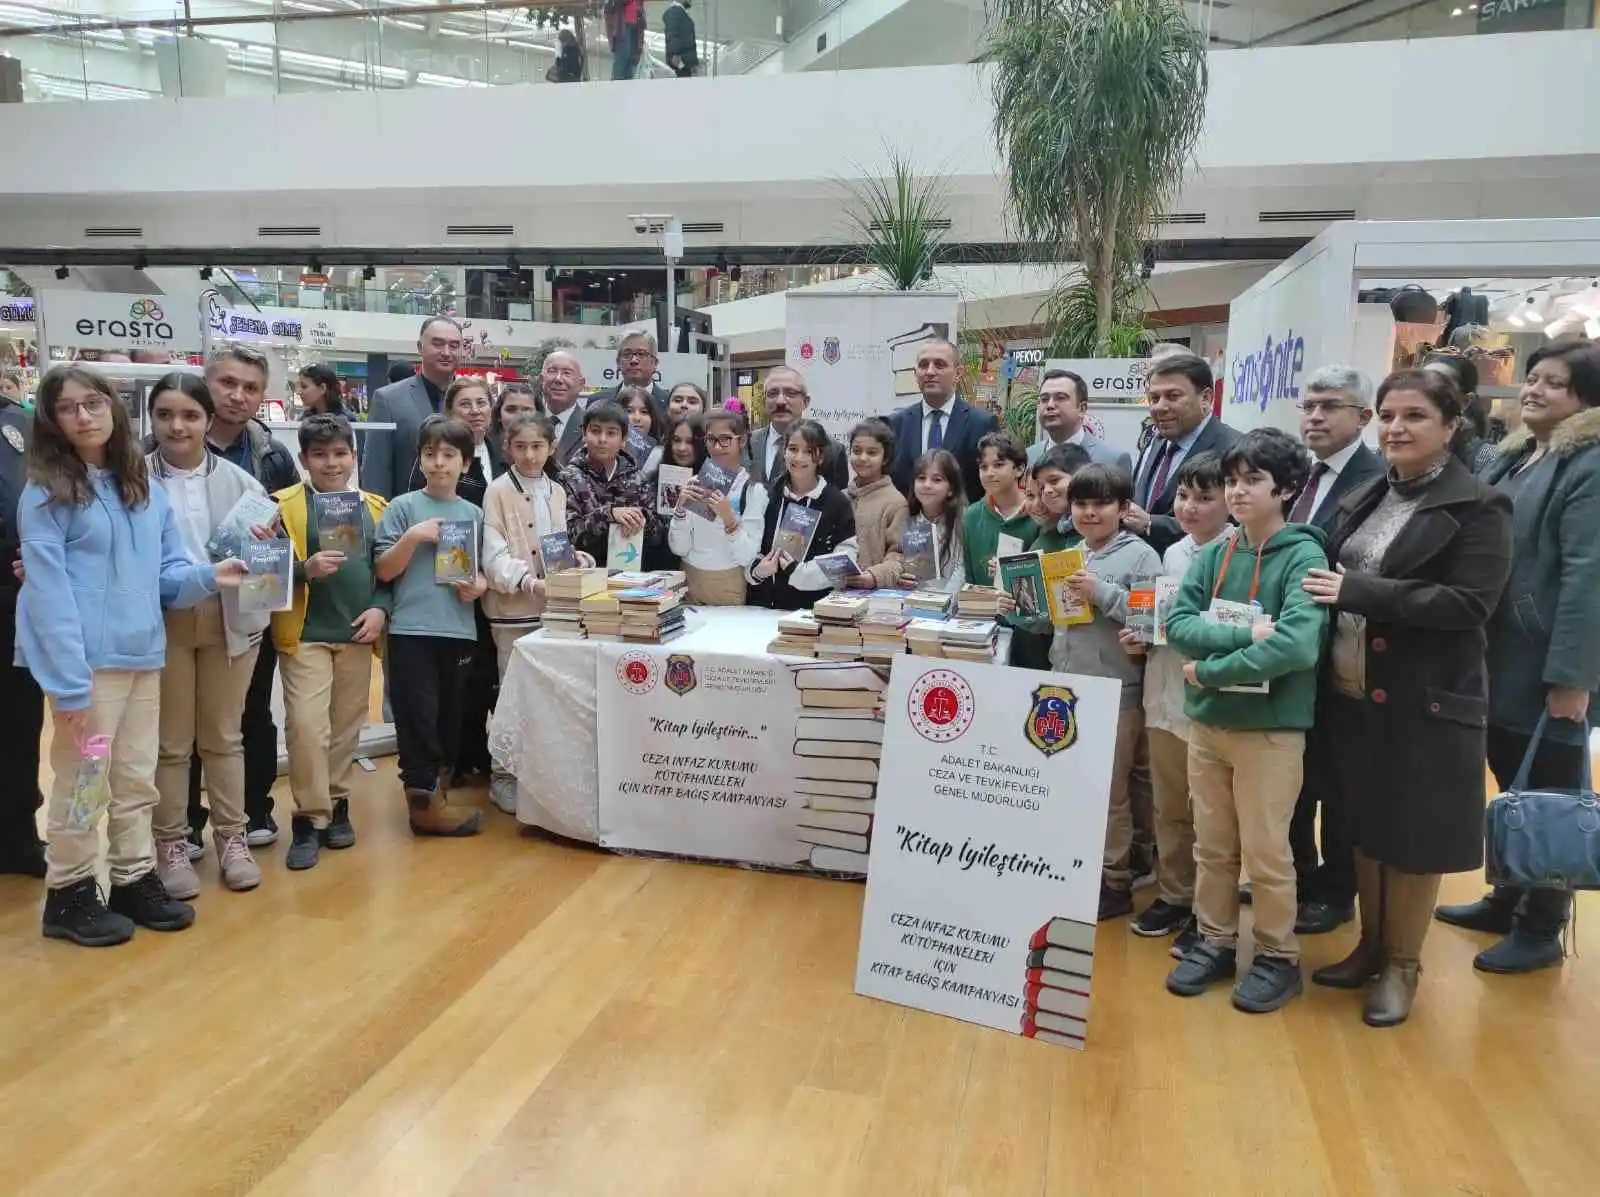 Fethiye'de hükümlüler için kitap bağış kampanyası başlatıldı
